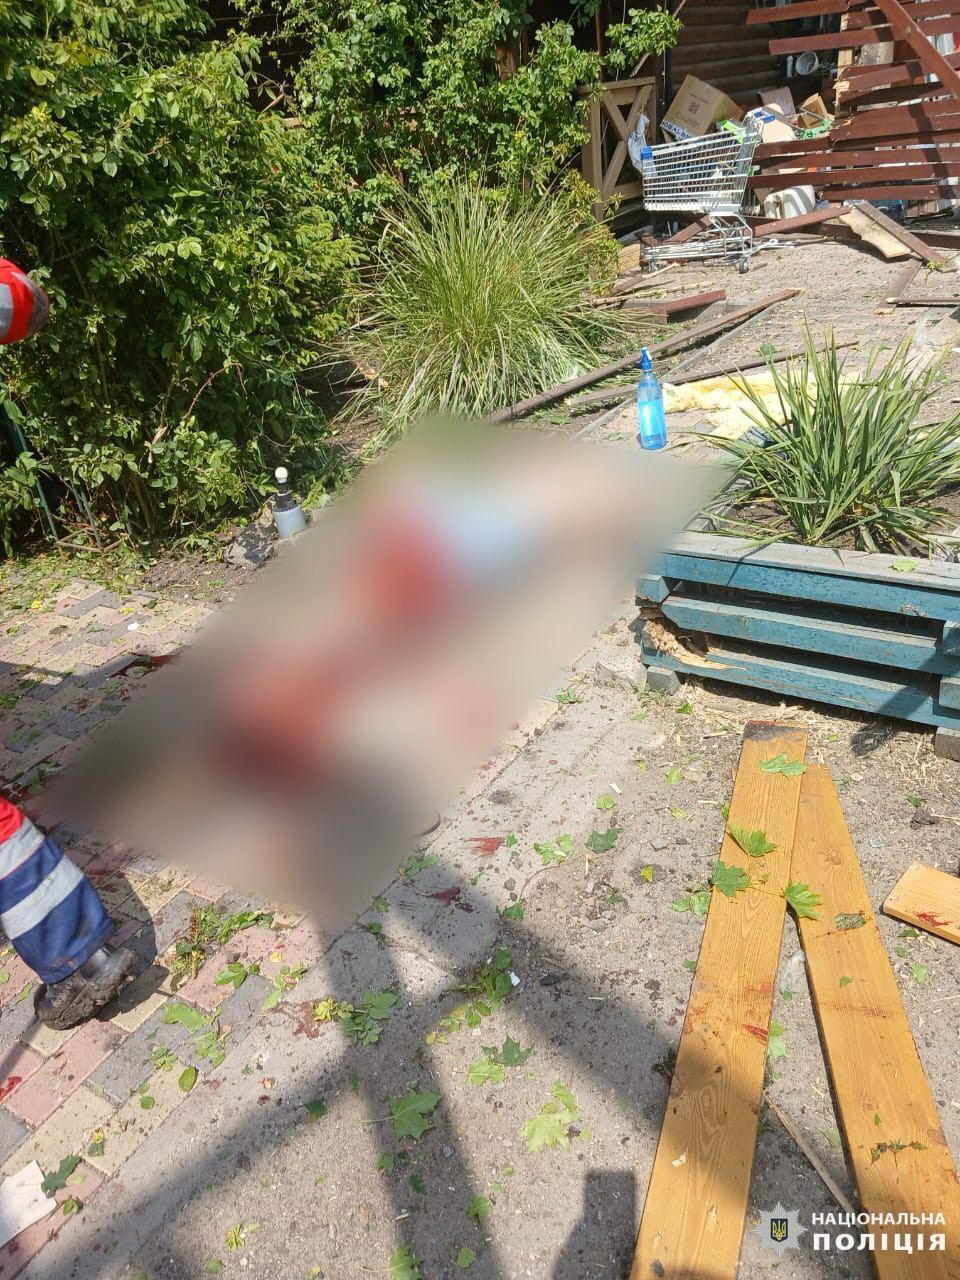 Под Харьковом армия РФ совершила теракт, дважды ударив "Искандером-М" в базу отдыха: 6 погибших, в том числе – беременная, 28 пострадавших